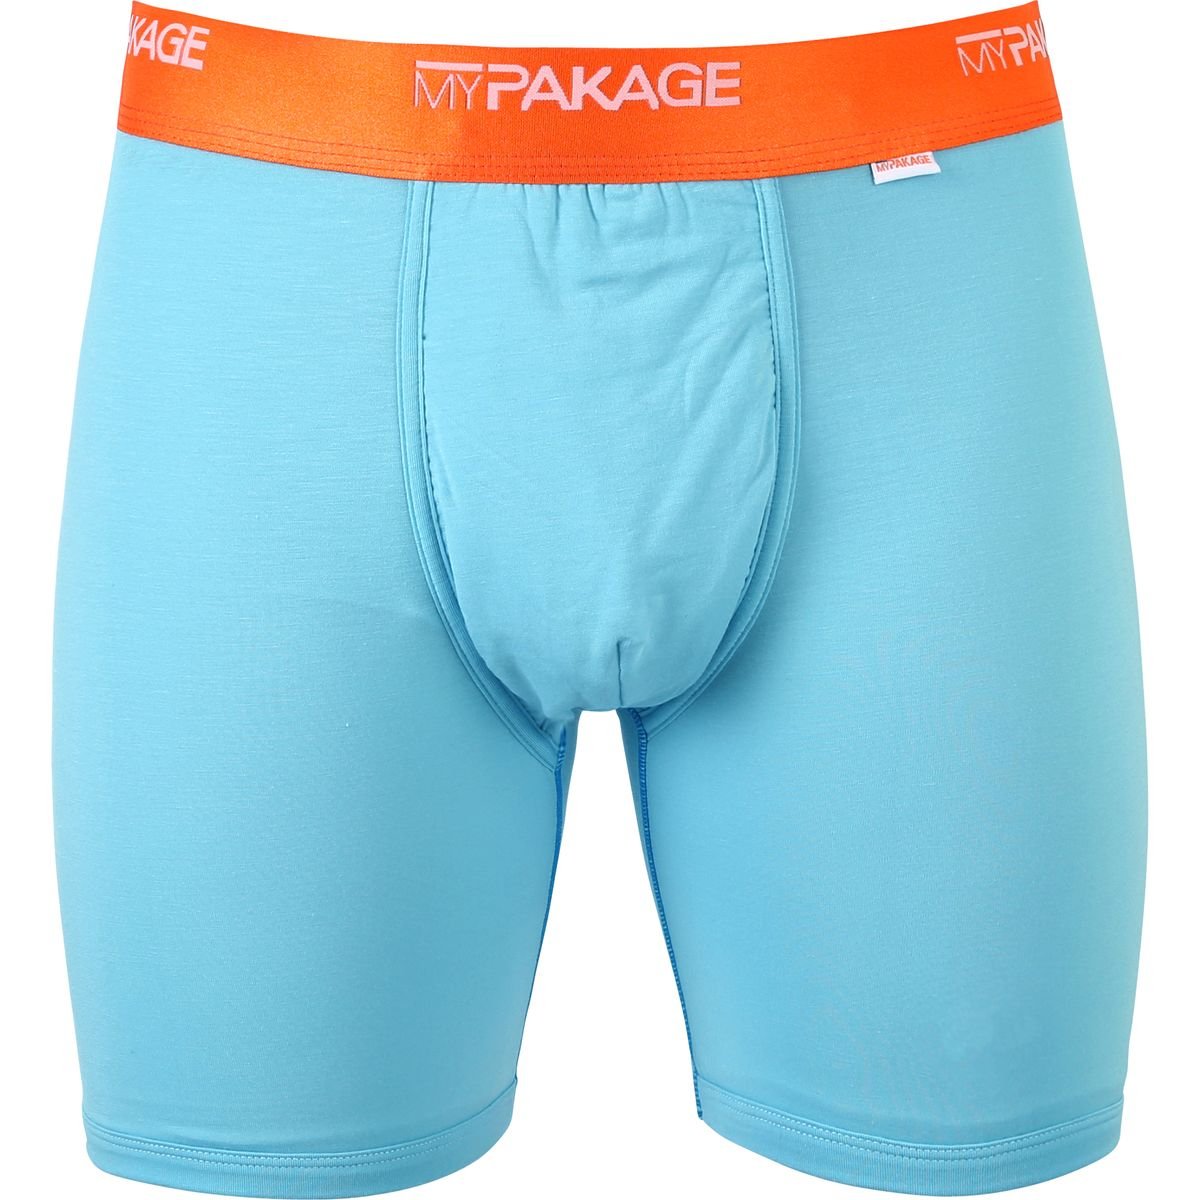 MyPakage Men's Weekday Boxer Brief Underwear Static - Small 